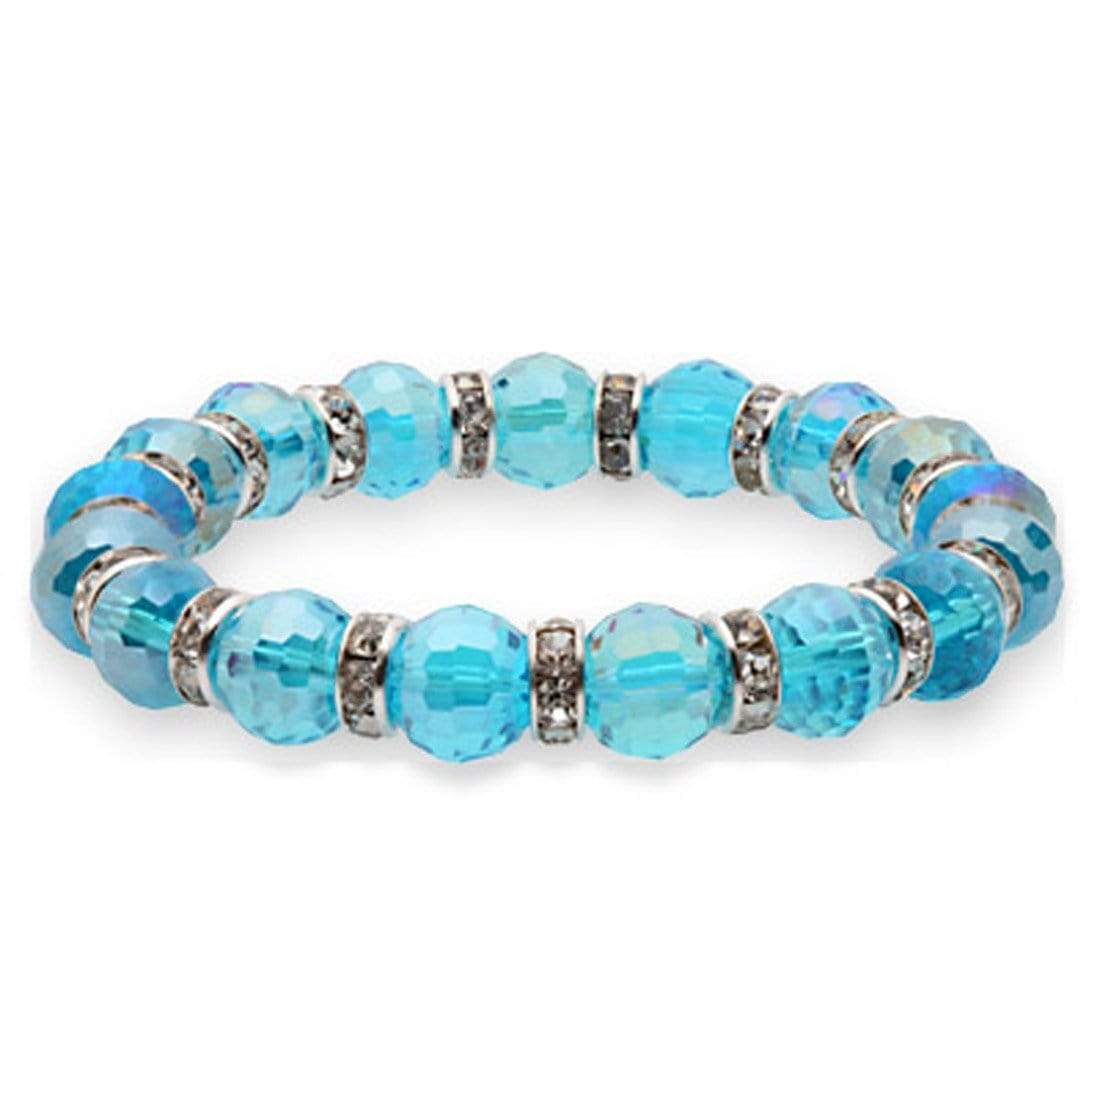 Kalifano Gorgeous Glass Jewelry Aqua Marine Gorgeous Glass Bracelet with Cubic Zirconia Crystals BLUE-BGG-A